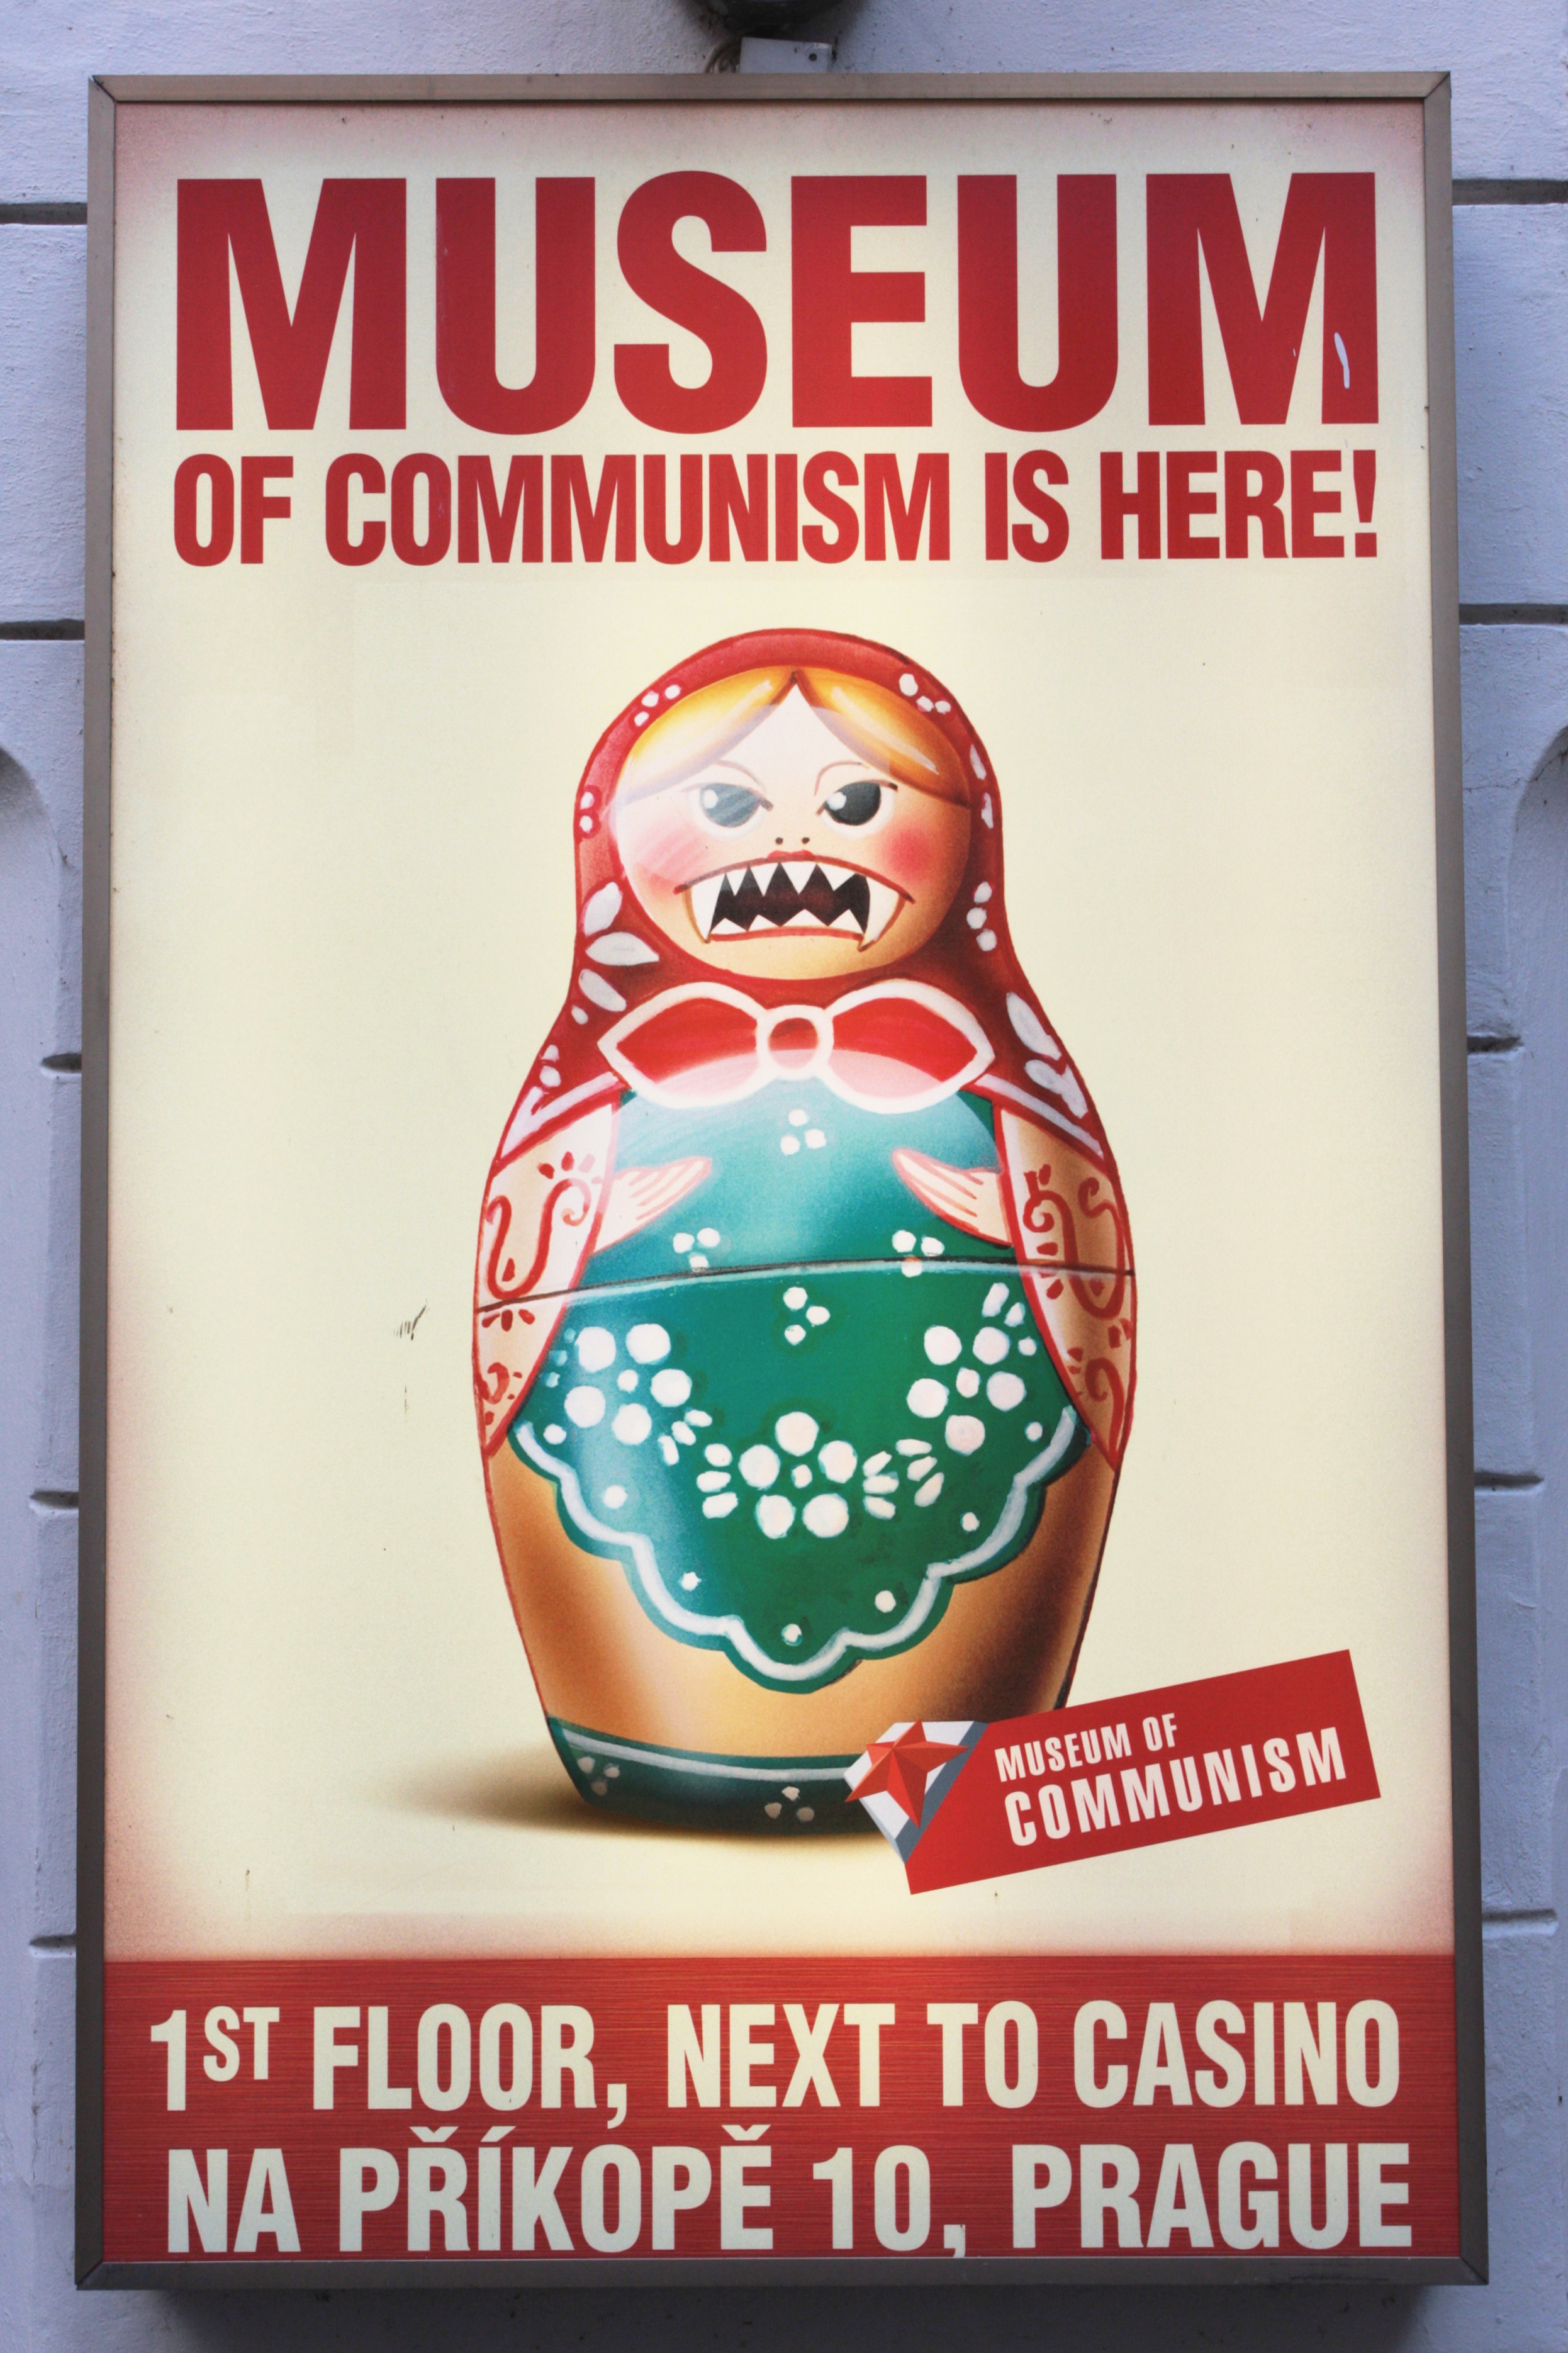 Résultat de recherche d'images pour "museum communism prague"